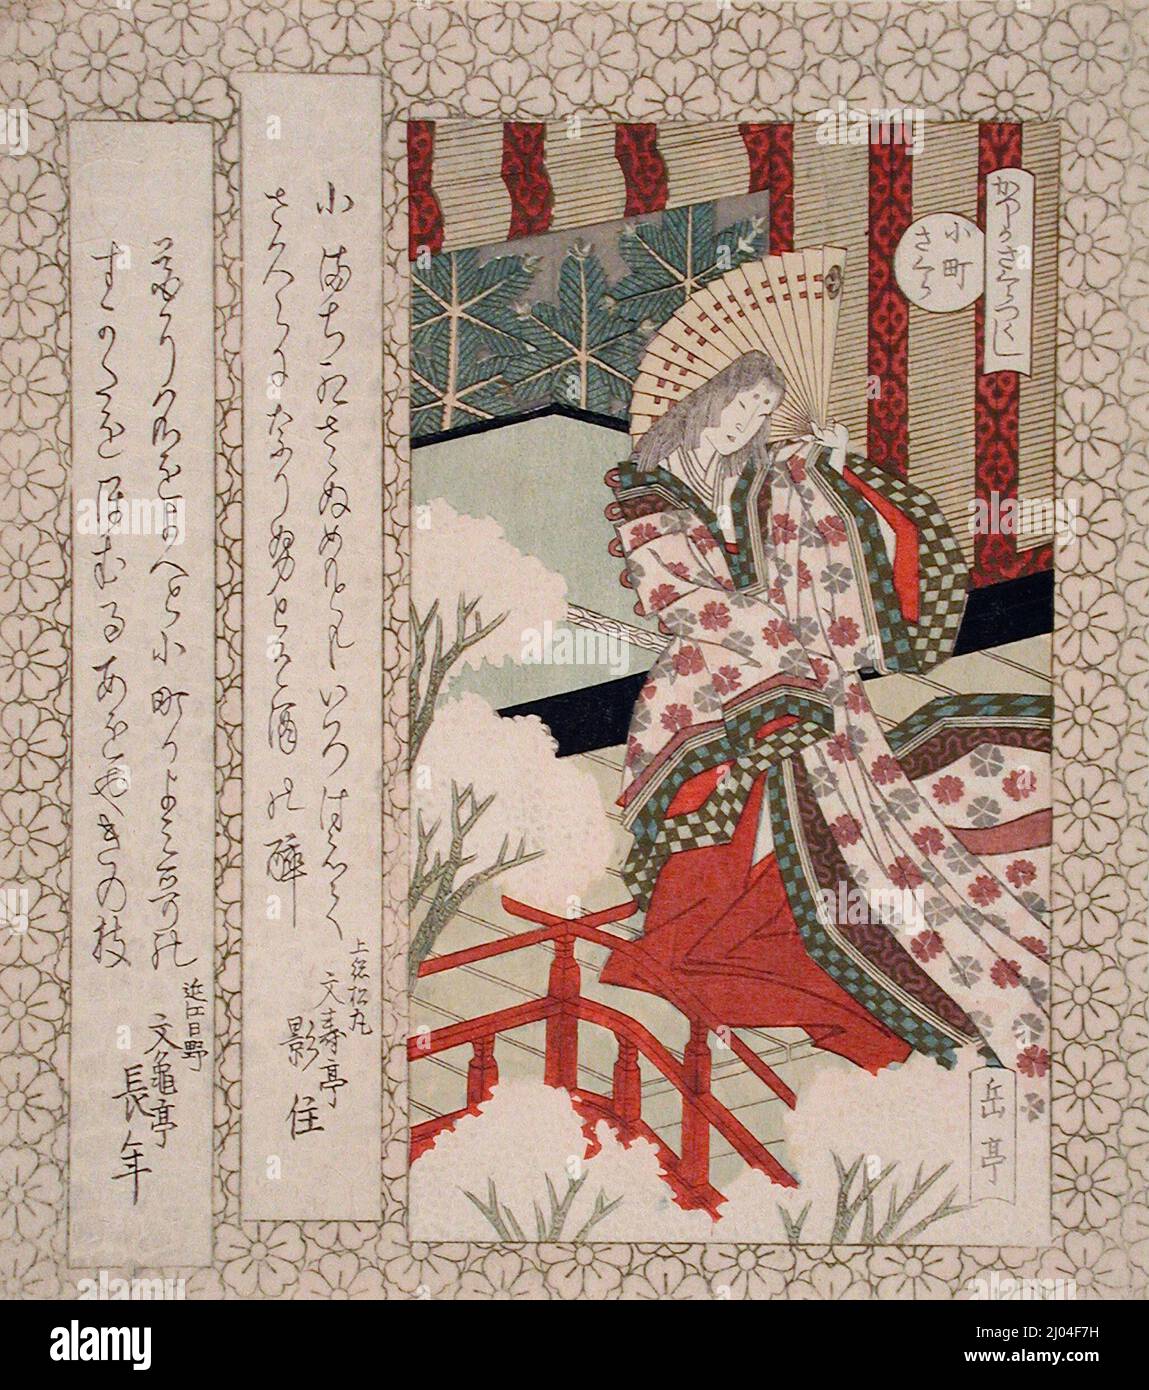 El cerezo de Ono no Komachi. Yashima Gakutei (Japón, c. 1786-c.1855). Japón, alrededor de 1830-1840. Impresiones; bloques de madera. Estampado de bloques de madera en color; surimono, mica, oro, plata, y latón Foto de stock